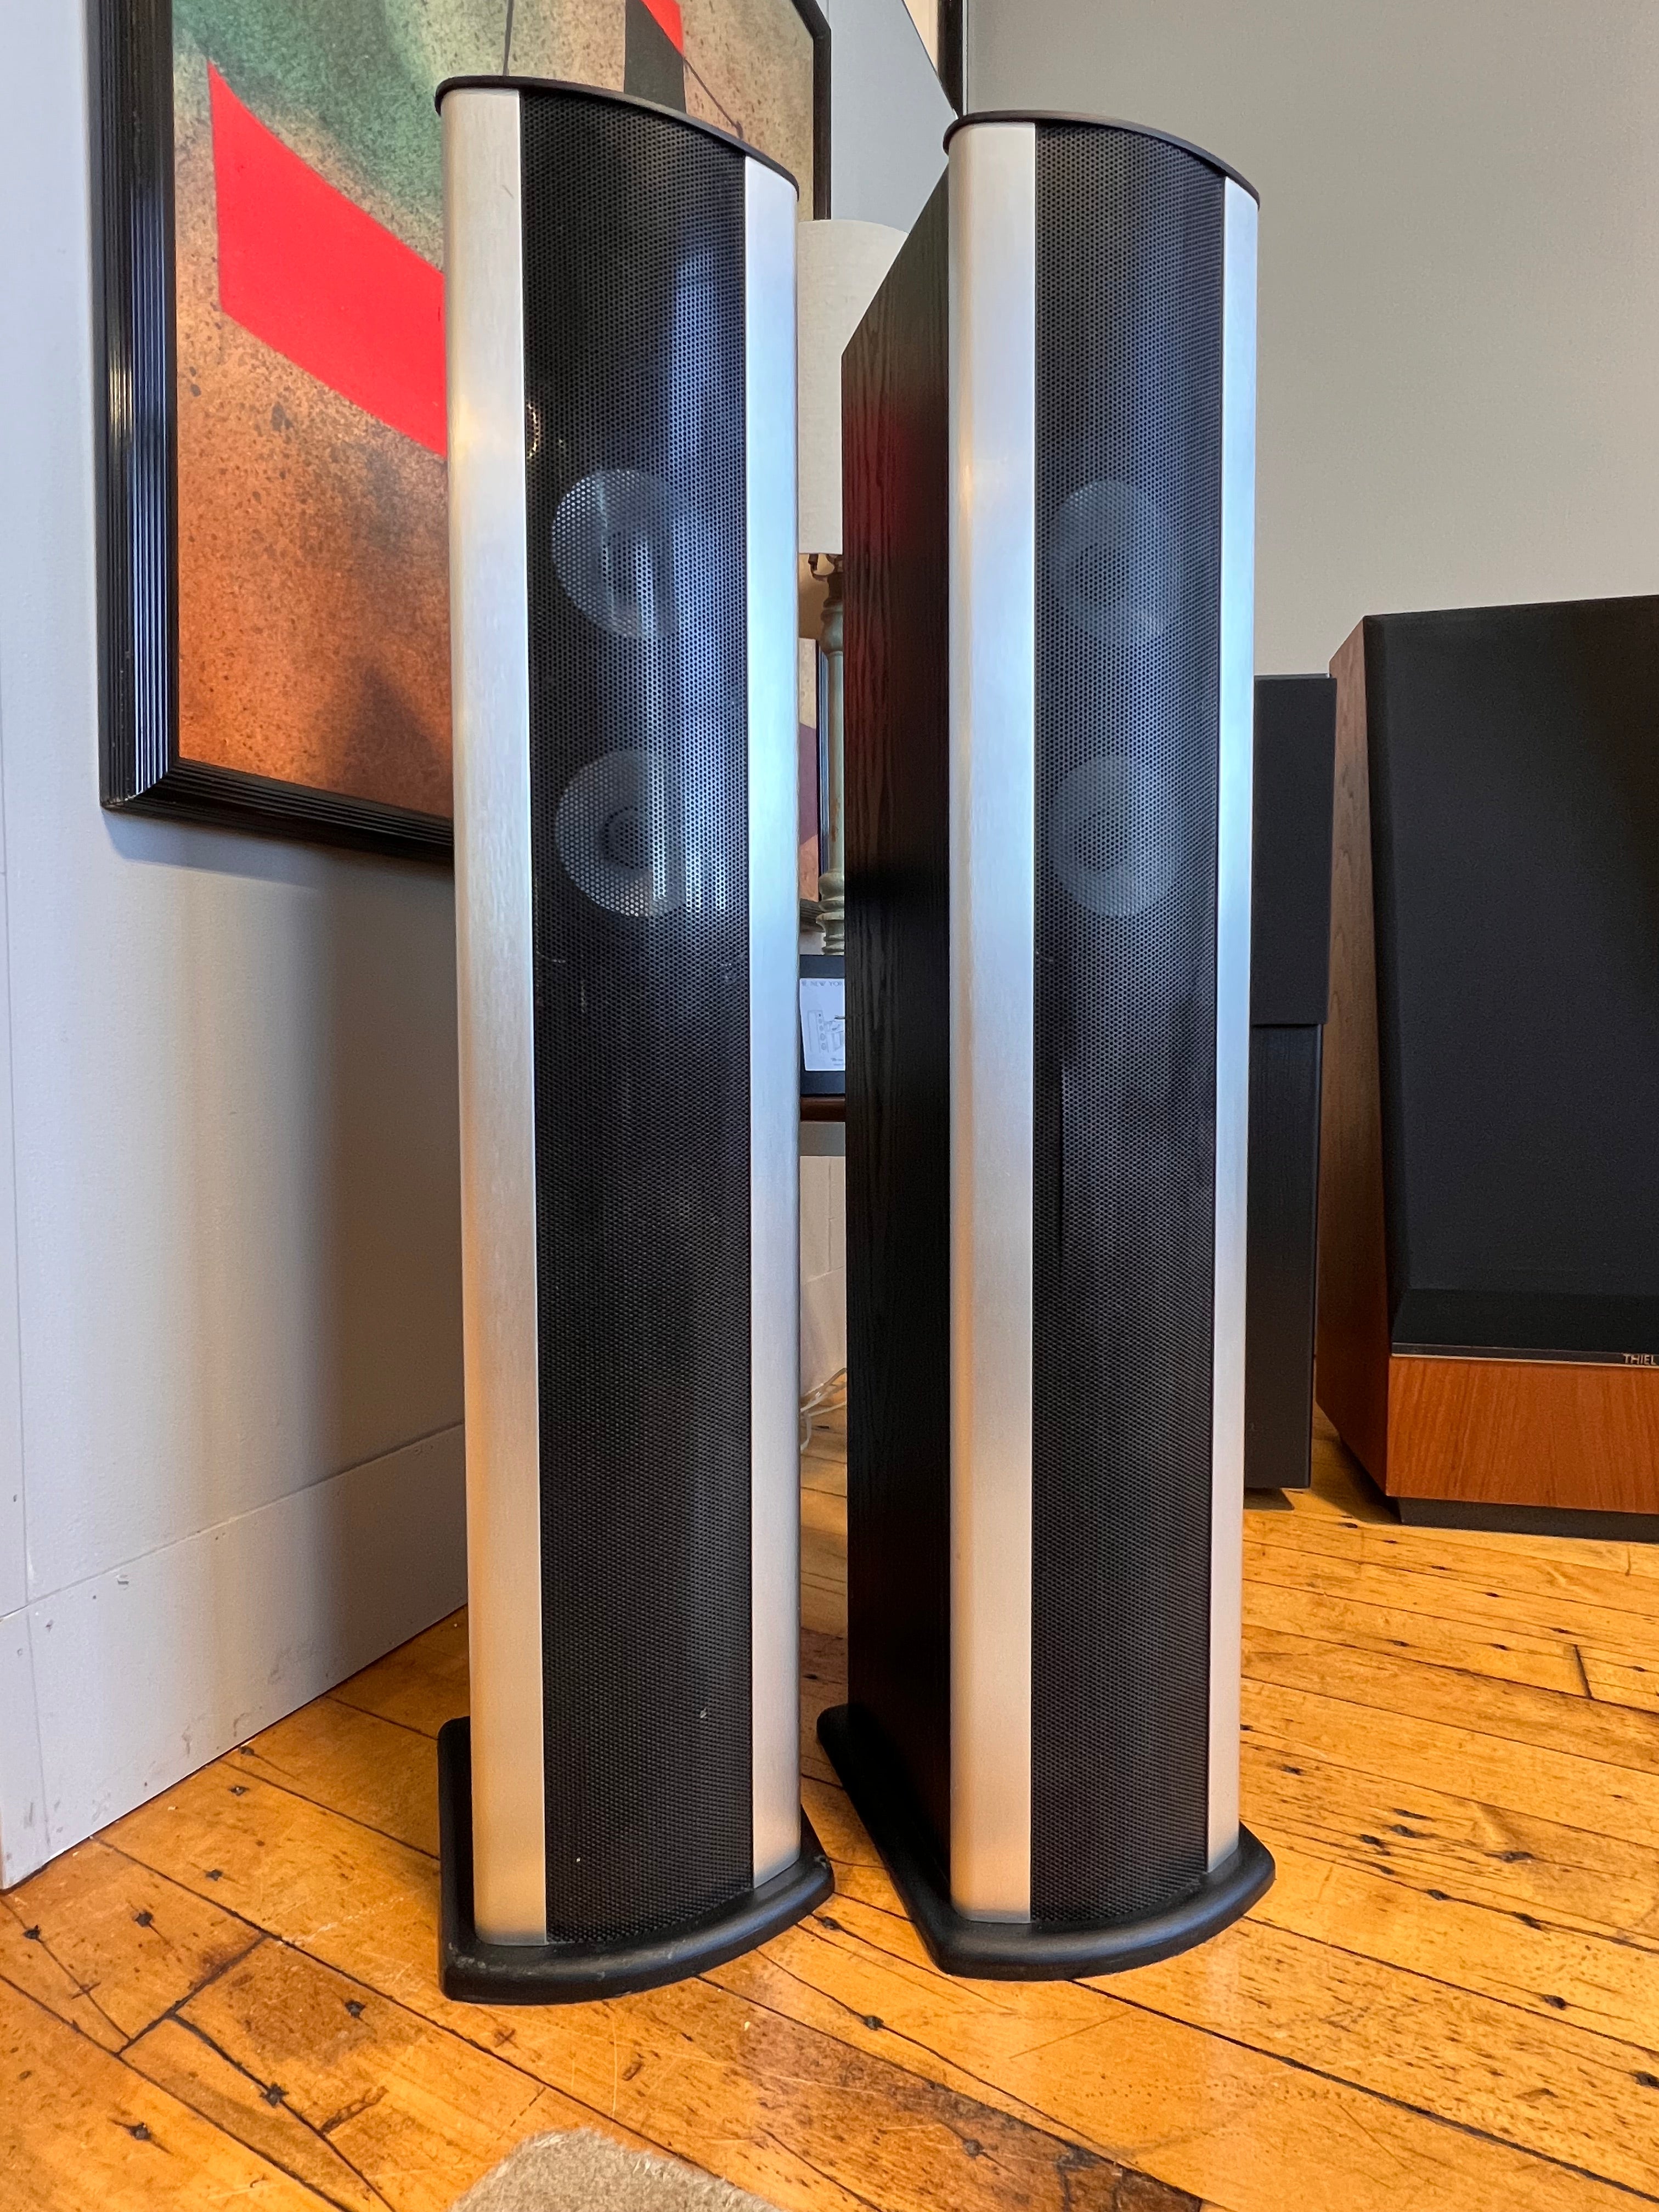 Bohlender Graebener Radia X3, Ribbon Hybrid Speakers